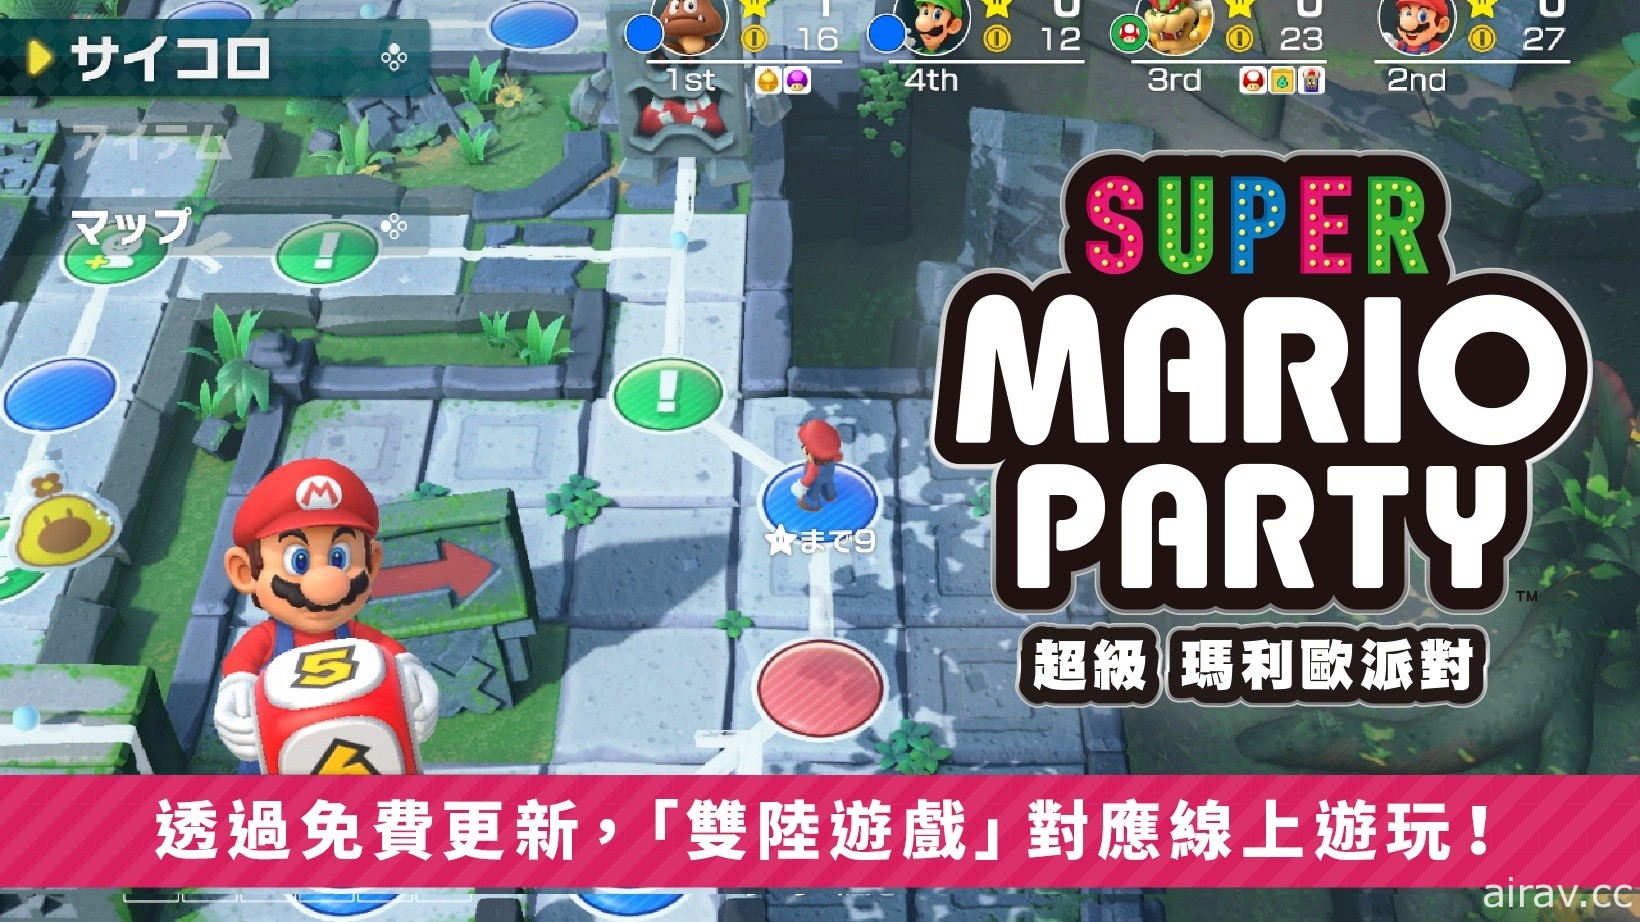 《超级玛利欧派对》发布免费更新 “双陆游戏”“70 种小游戏”追加支援线上游玩